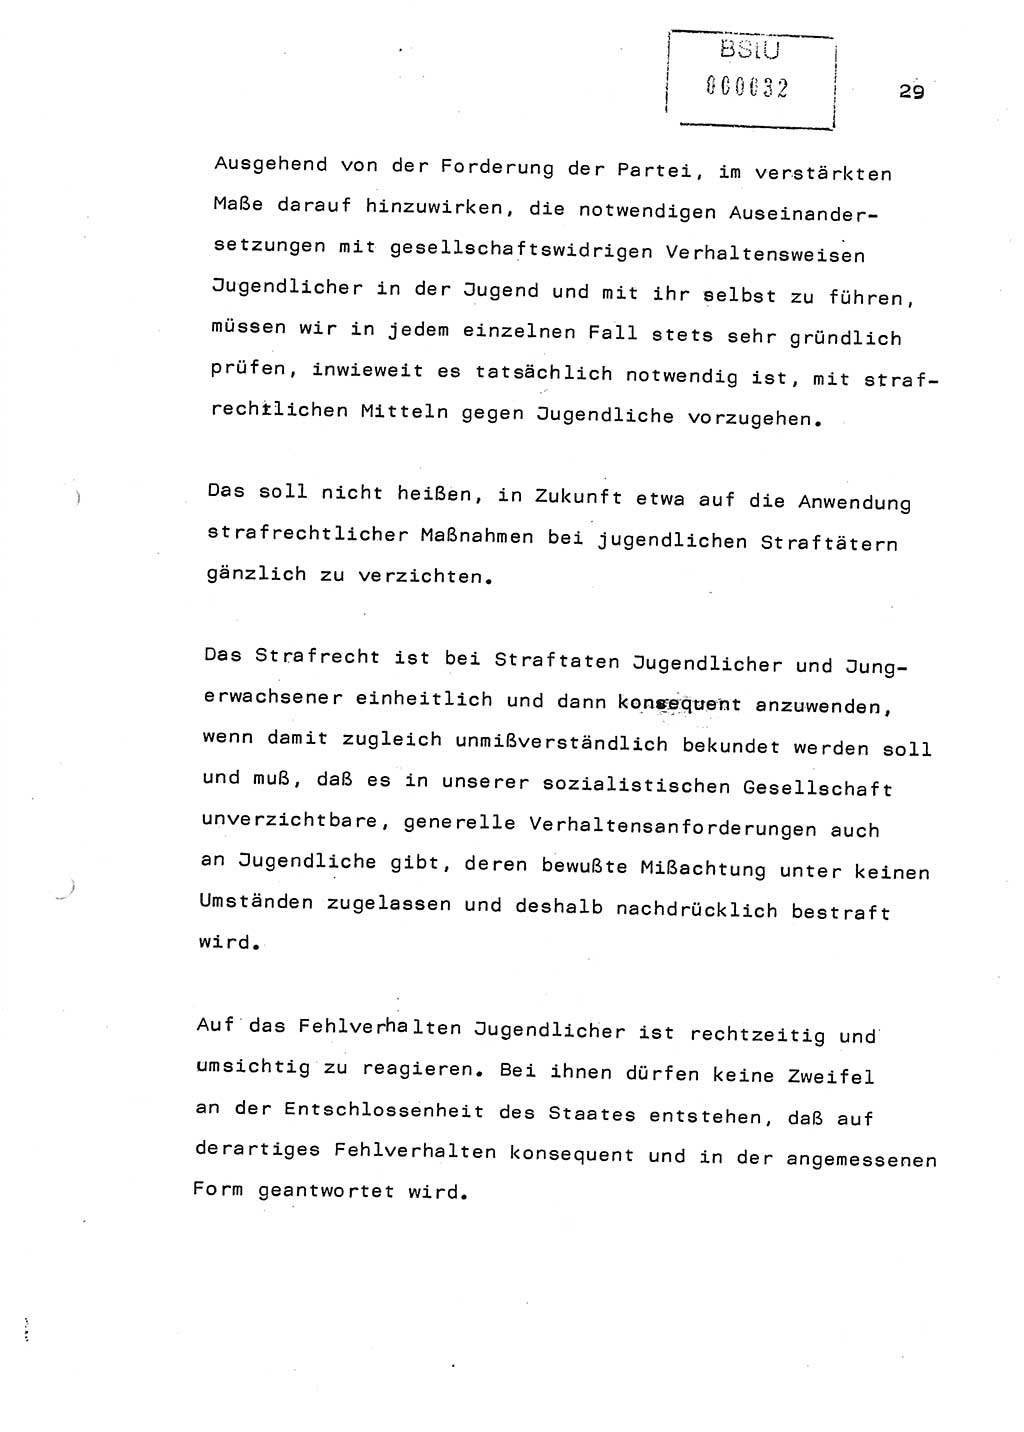 Referat (Generaloberst Erich Mielke) auf der Zentralen Dienstkonferenz am 24.5.1979 [Ministerium für Staatssicherheit (MfS), Deutsche Demokratische Republik (DDR), Der Minister], Berlin 1979, Seite 29 (Ref. DK DDR MfS Min. /79 1979, S. 29)